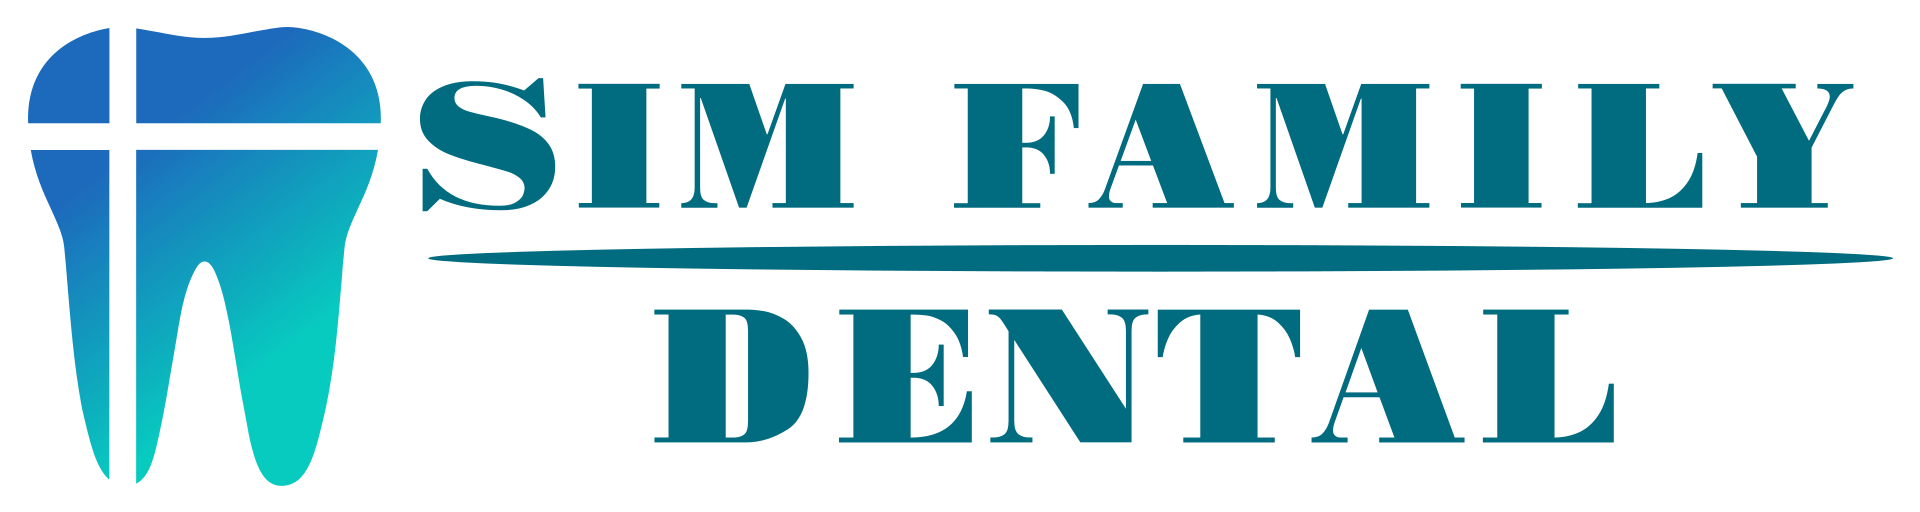 Sim Family Dental full color logo